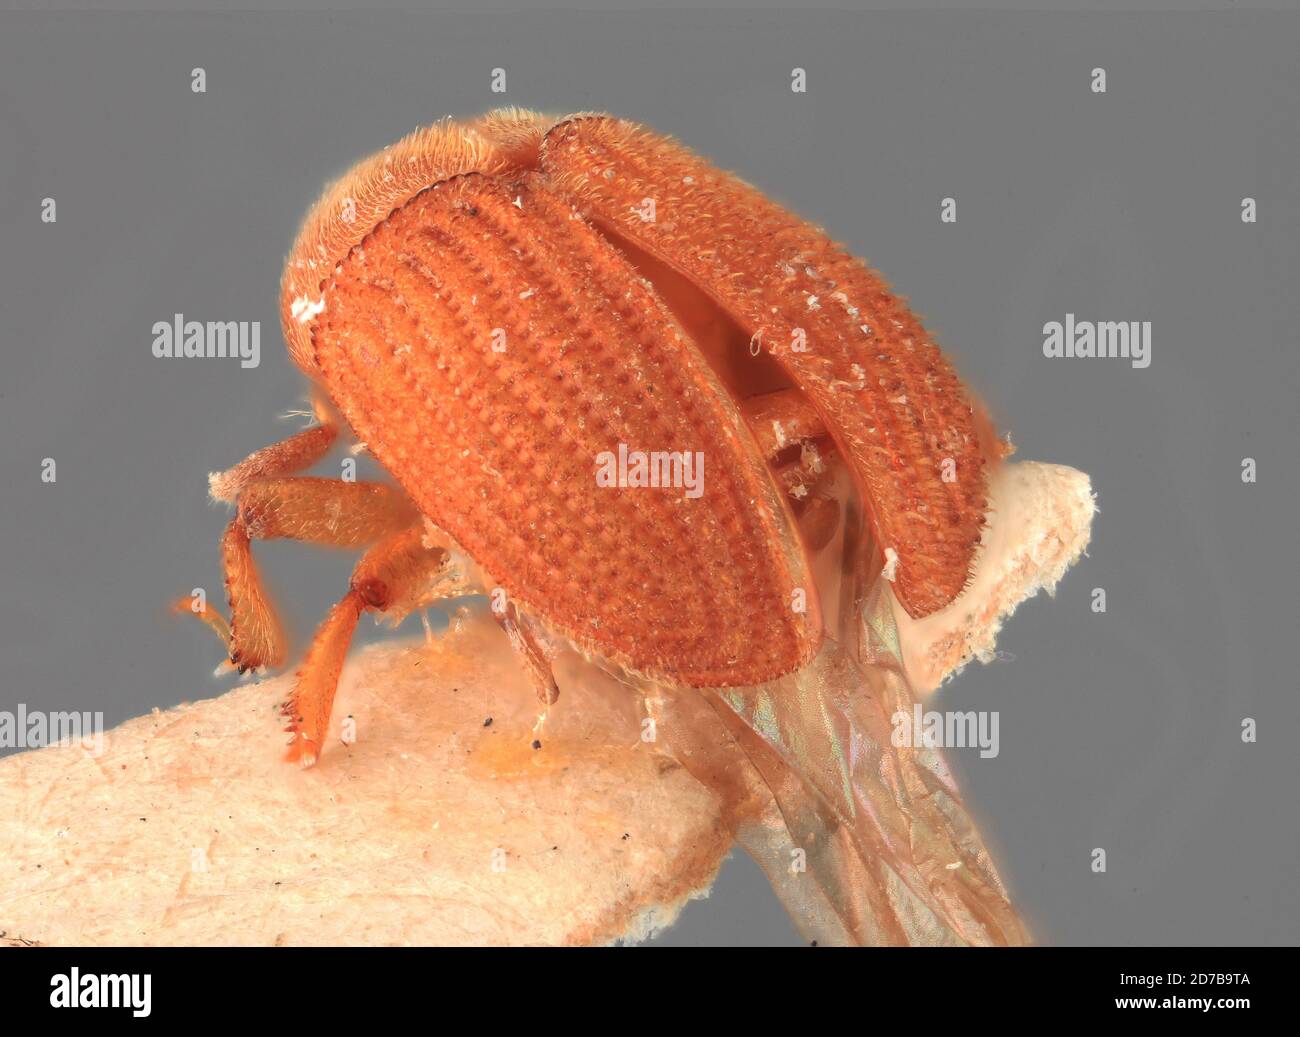 Pinned, Nauri 2500' Lansdowne. B.M. Bhatia. IV. 1926, Landowne, India, Phloeosinus phoebe Wood, 1988, Animalia, Arthropoda, Insecta, Coleoptera, Curculionidae, Scolytinae Stock Photo